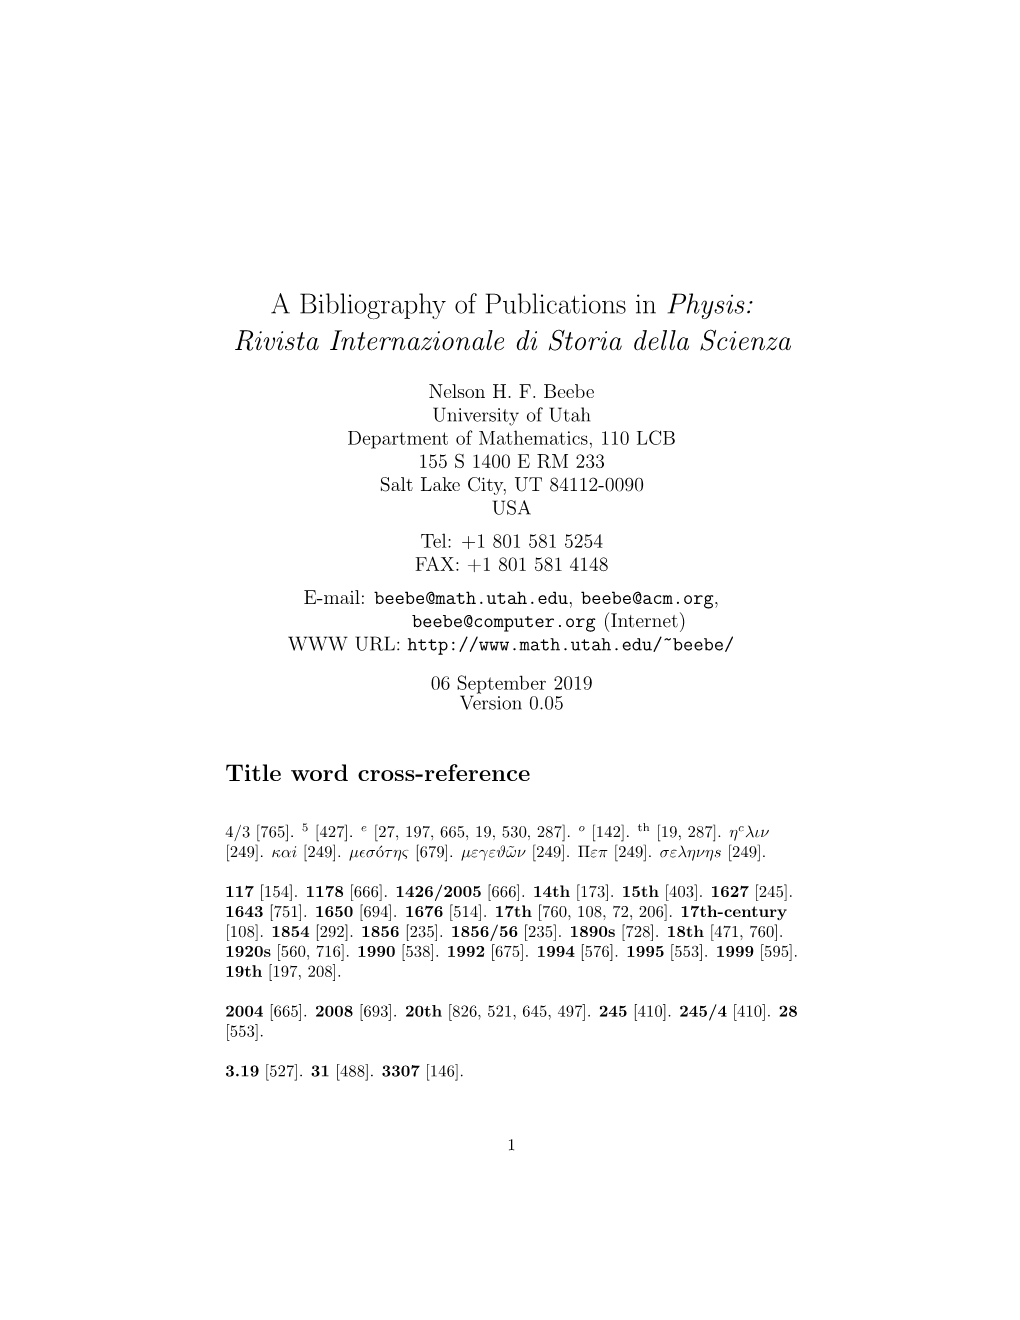 A Bibliography of Publications in Physis: Rivista Internazionale Di Storia Della Scienza